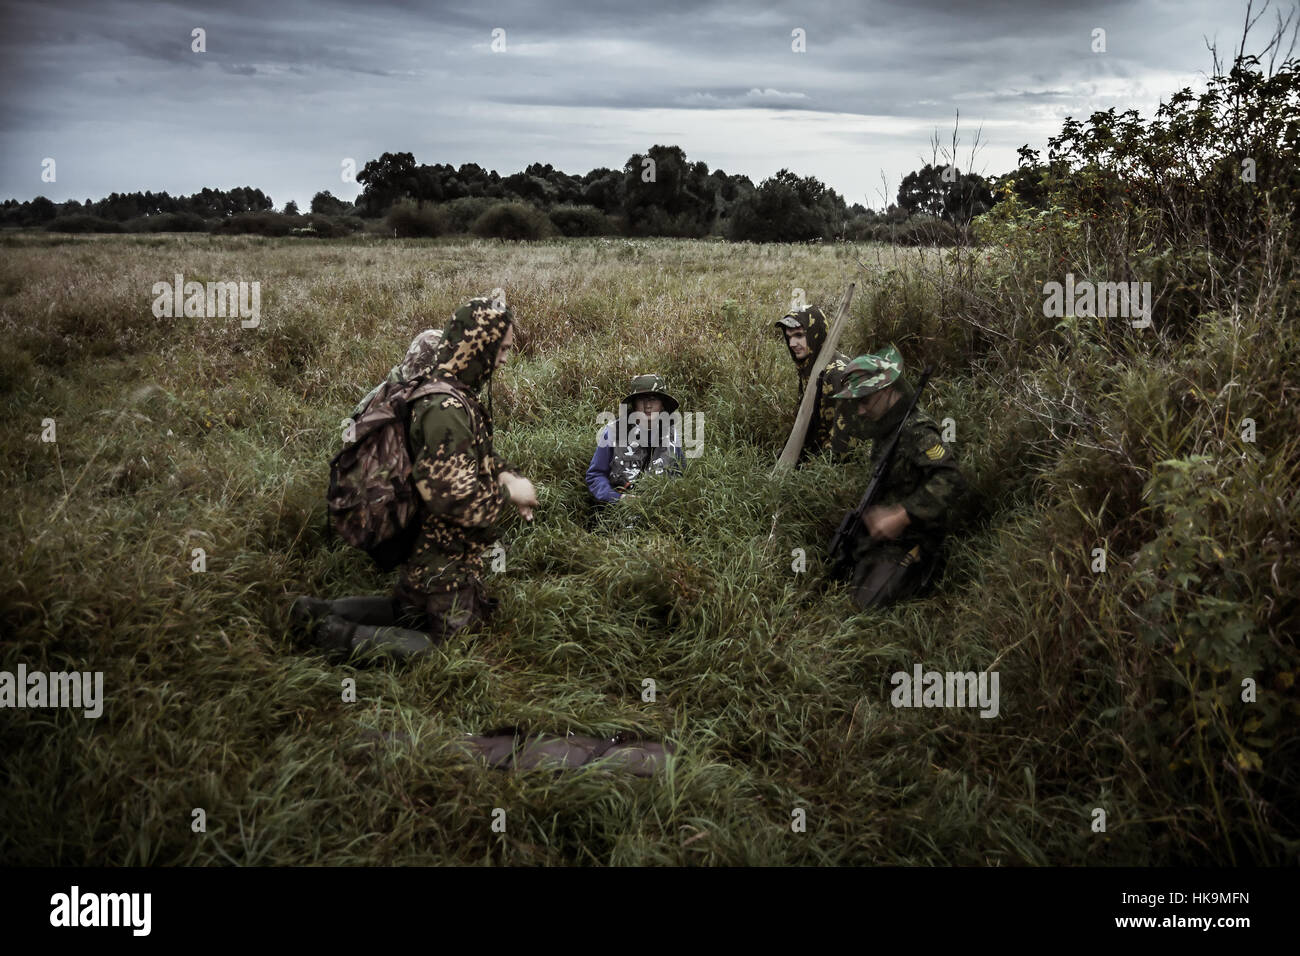 Scène de chasse avec groupe de chasseurs dans les régions rurales de champ avec ciel dramatique dans l'attente de la chasse dans les hautes herbes pendant la saison de la chasse Banque D'Images